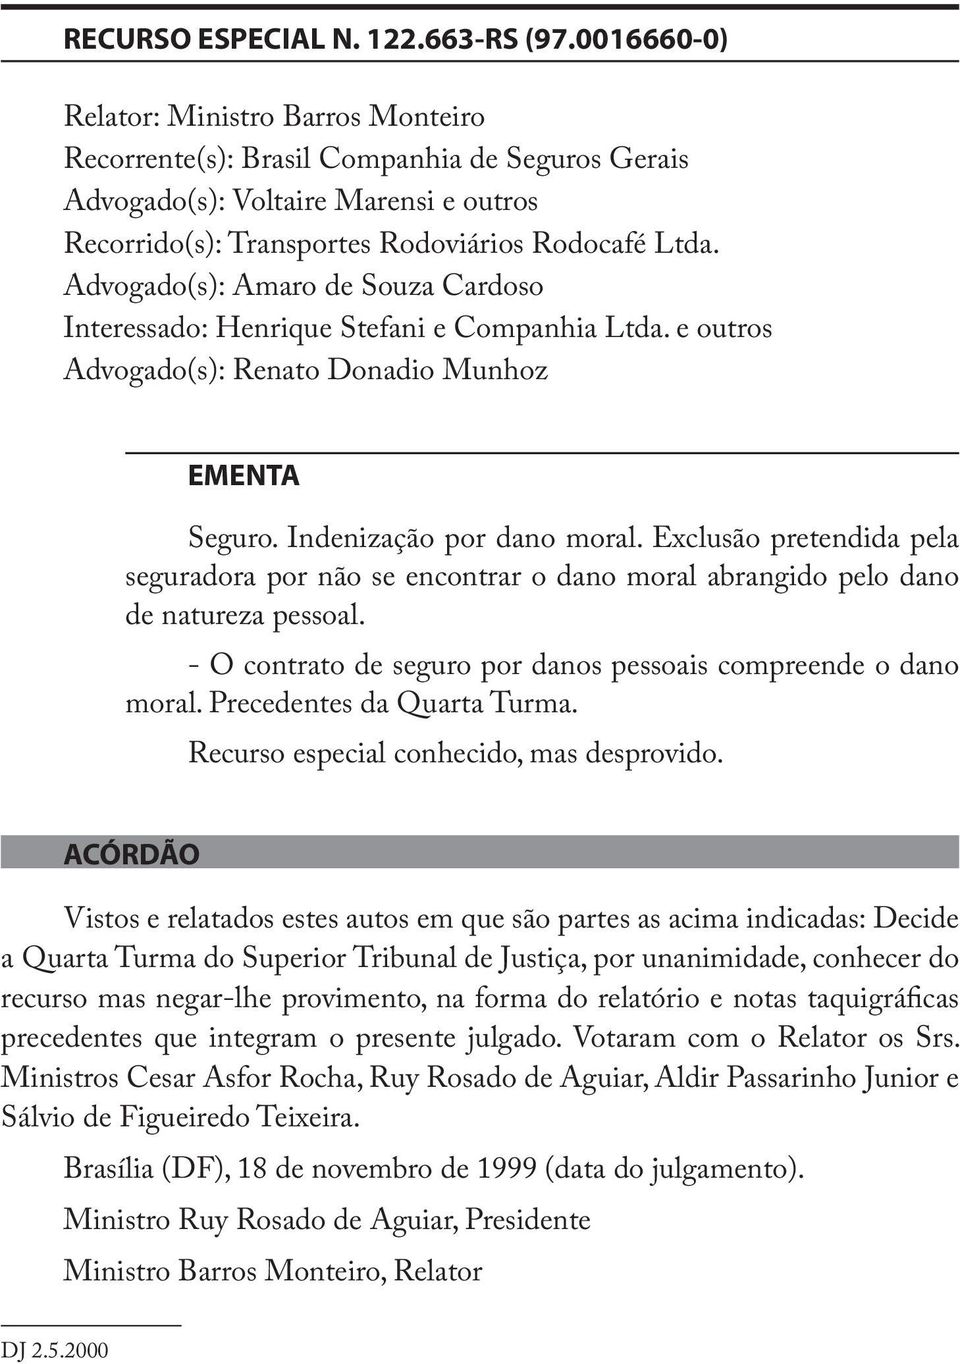 Advogado(s): Amaro de Souza Cardoso Interessado: Henrique Stefani e Companhia Ltda. e outros Advogado(s): Renato Donadio Munhoz EMENTA Seguro. Indenização por dano moral.